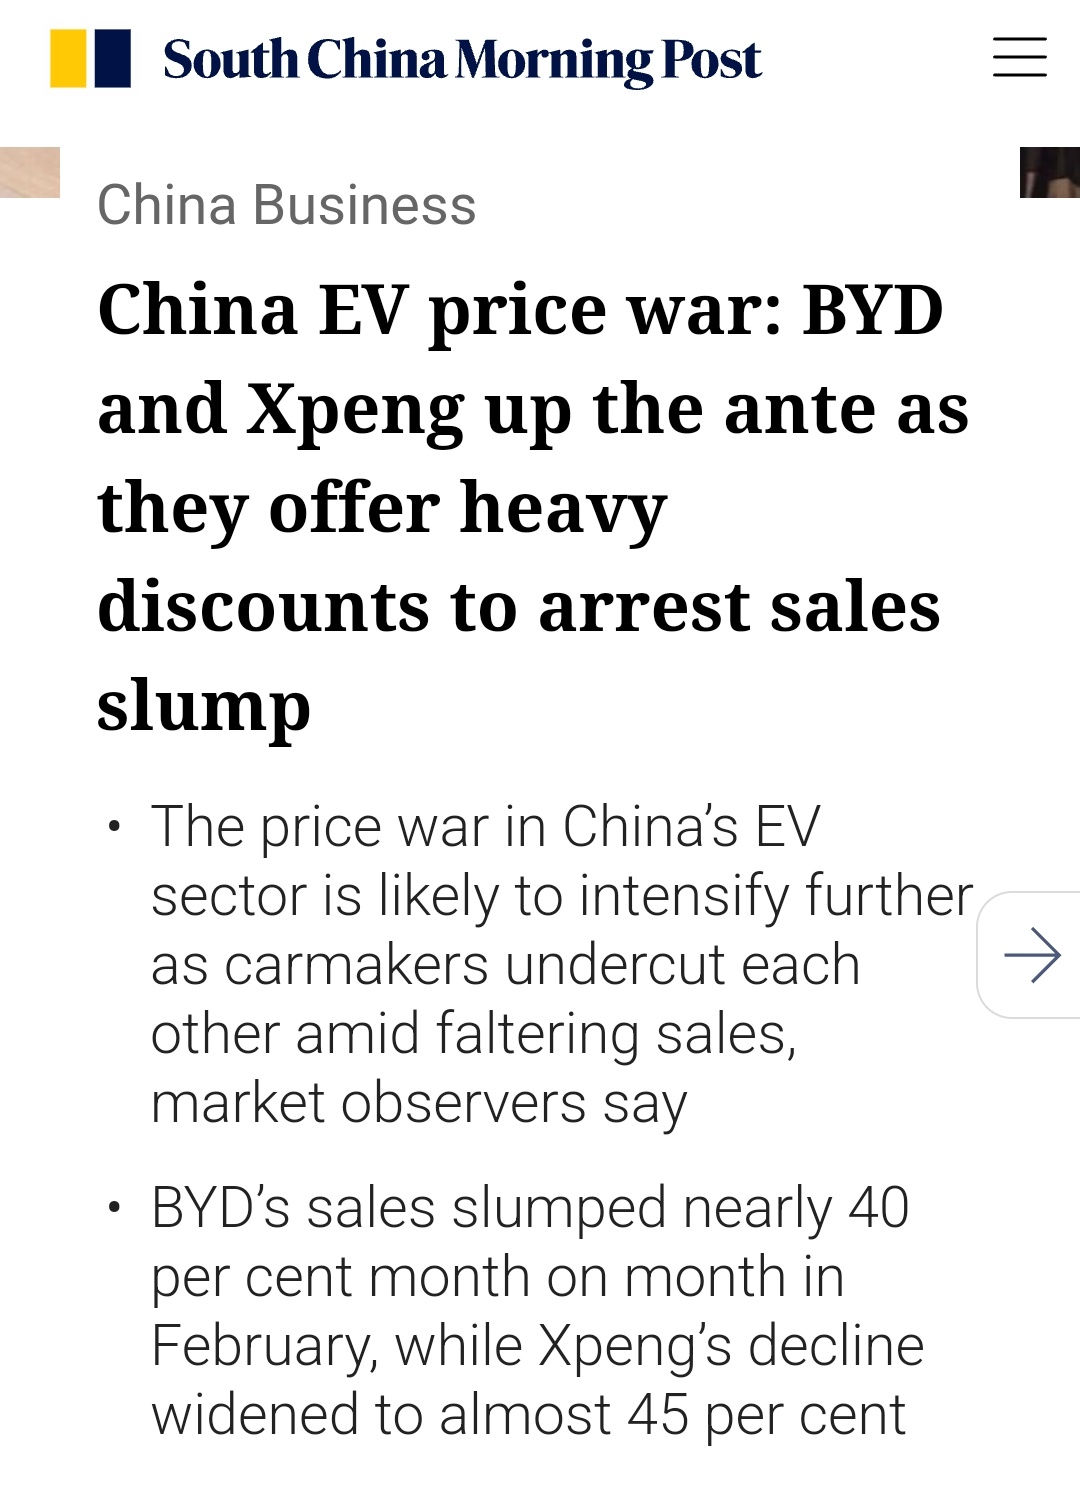 比亞迪和 Xpeng 啟動新降價和大幅折扣以阻止銷售暴跌